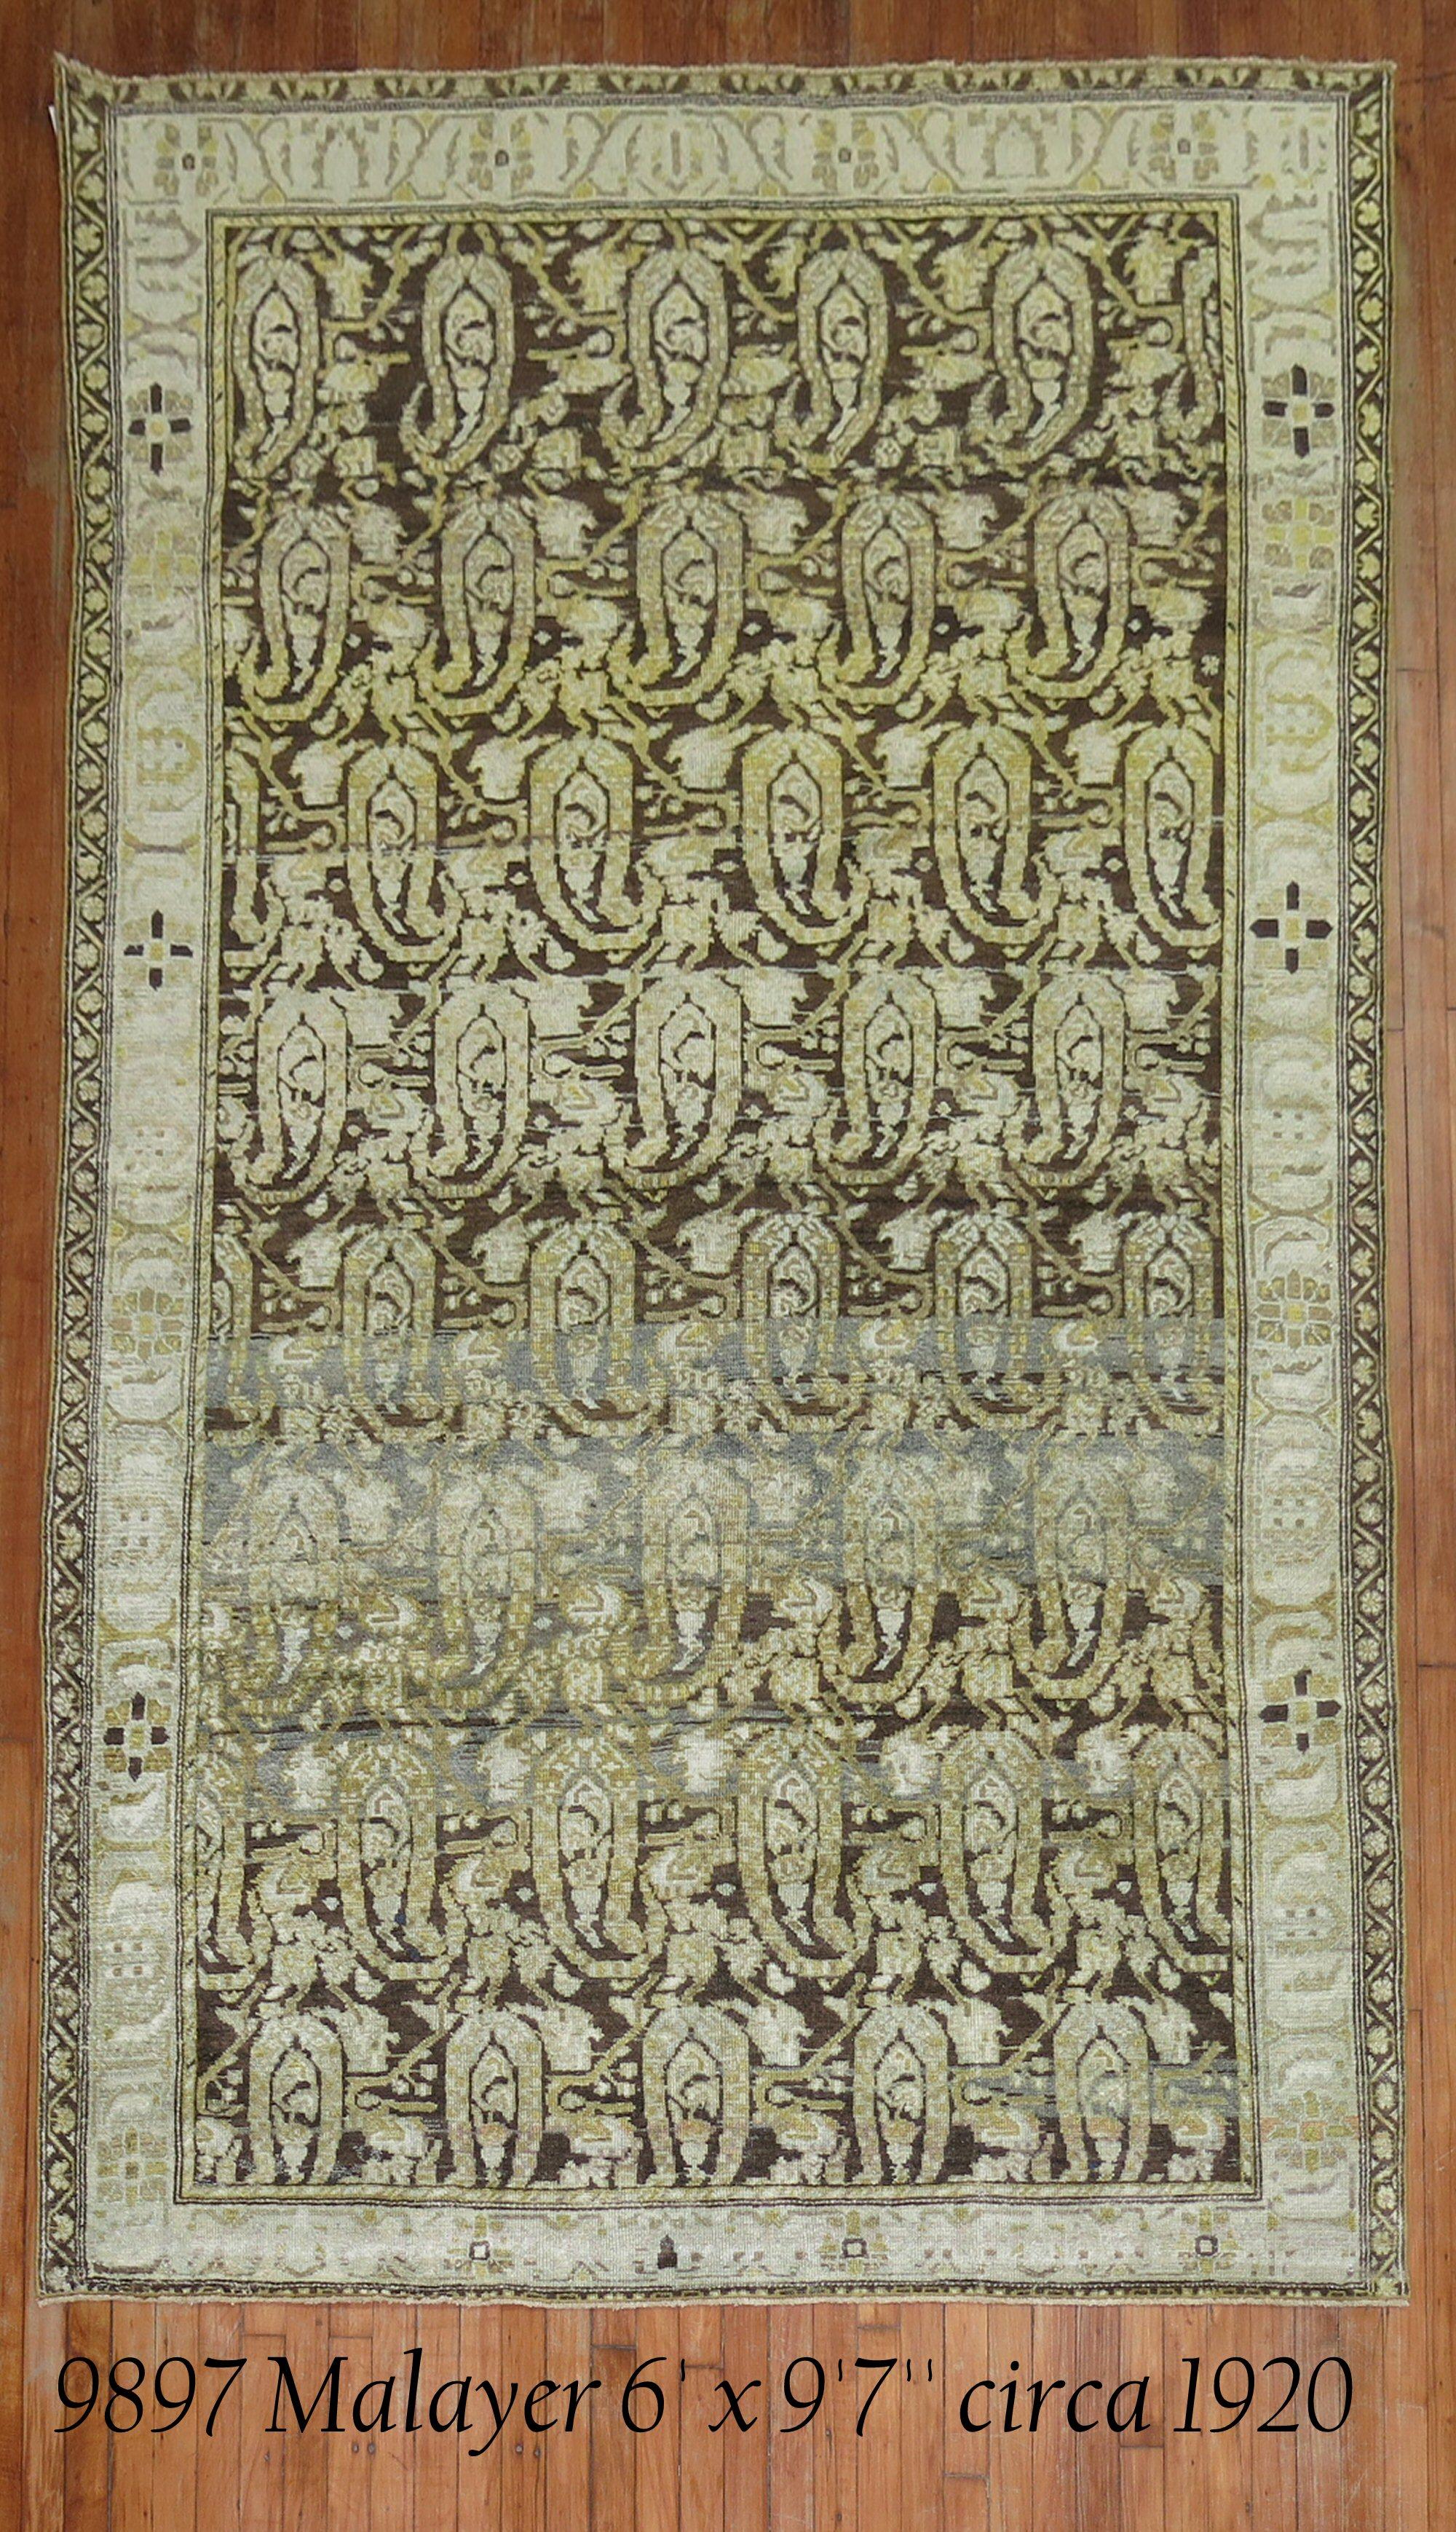 Ein antiker persischer Malayer-Teppich mit einem großen Paisley-Muster in Braun, Grün und Gelb

Maße: 6' x 9'7